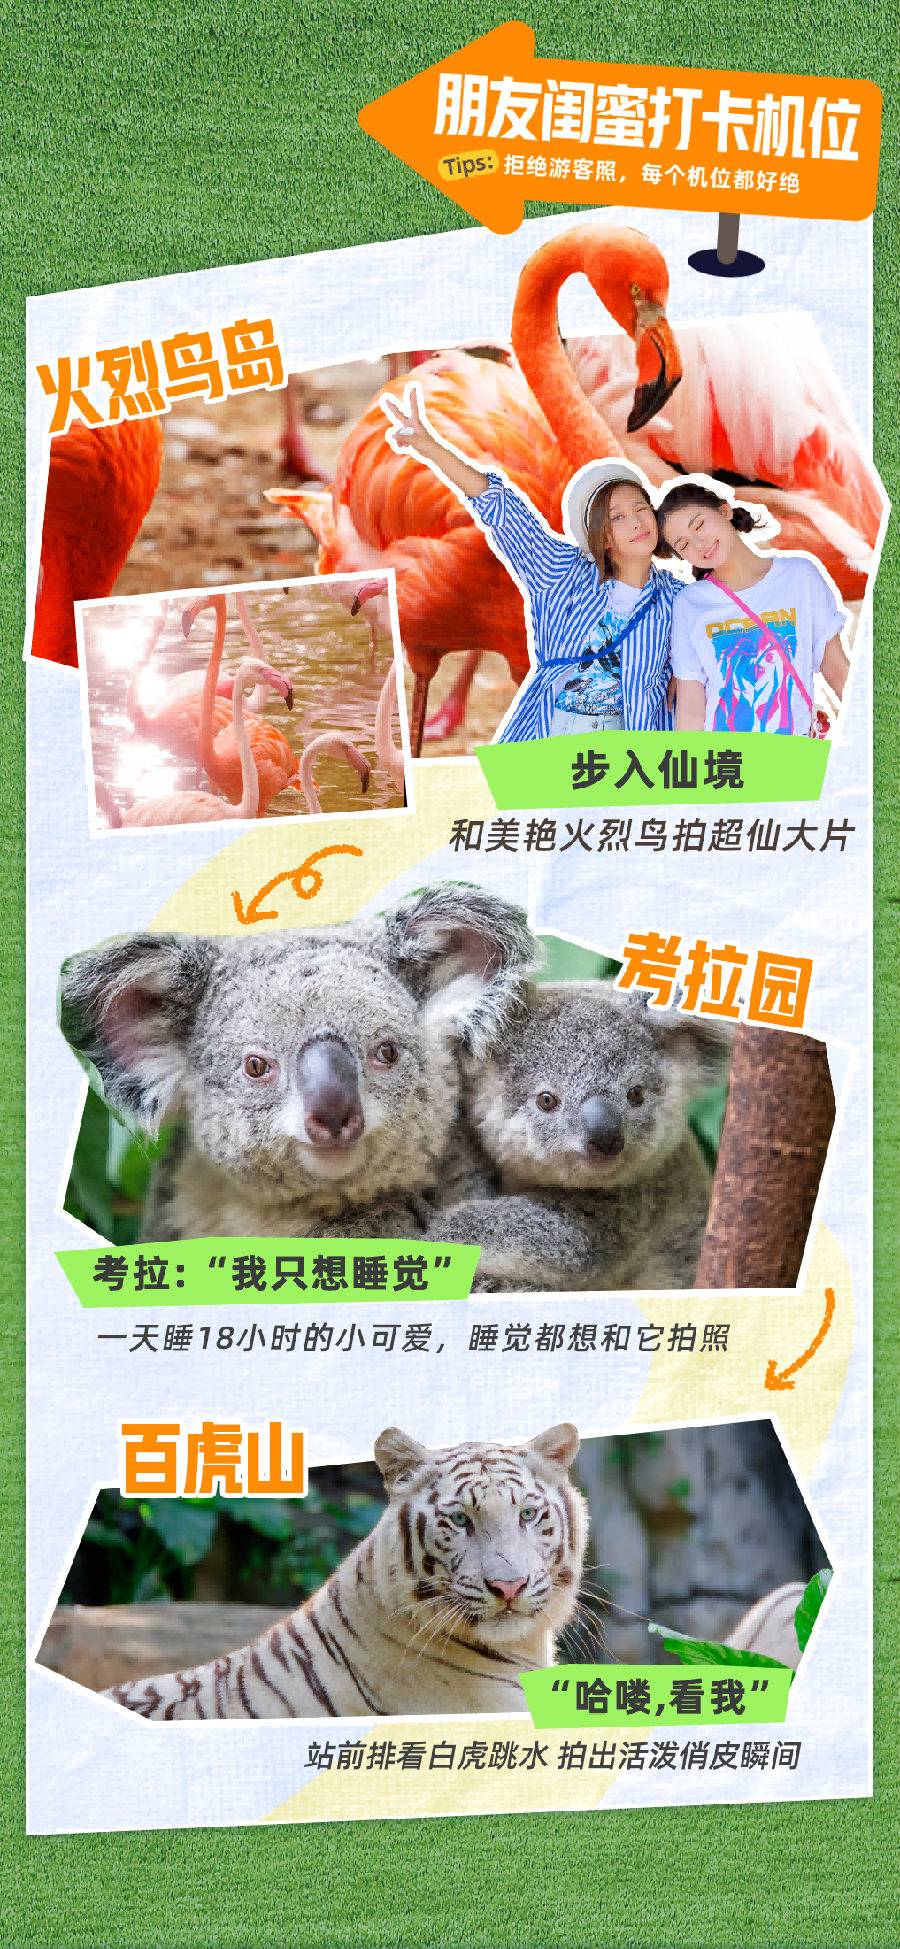 【需提前1天预订】广州长隆野生动物世界1日门票双人票